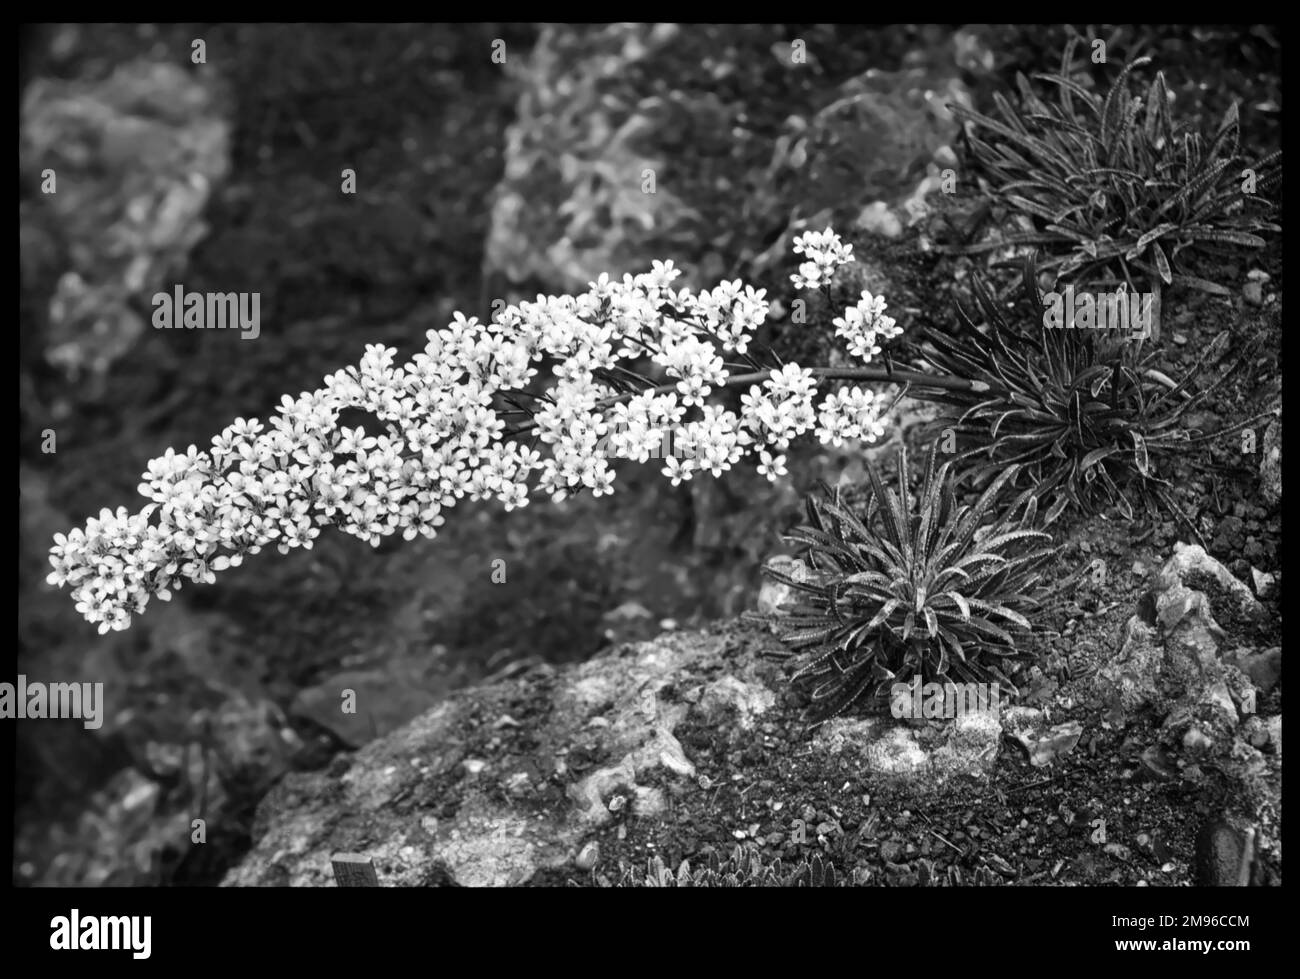 Saxifraga lingulata aus der Familie der Saxifragaceae (aufgrund ihrer Fähigkeit, in den Rissen zwischen den Felsen zu wachsen, gemeinhin als Saxifrage oder Steinbrecher bekannt). Hier wachsen sie in einer felsigen Umgebung im Malby Garten. Es hat weiße Blumen und wächst im Mai und Juni in eleganten Sprays. Stockfoto